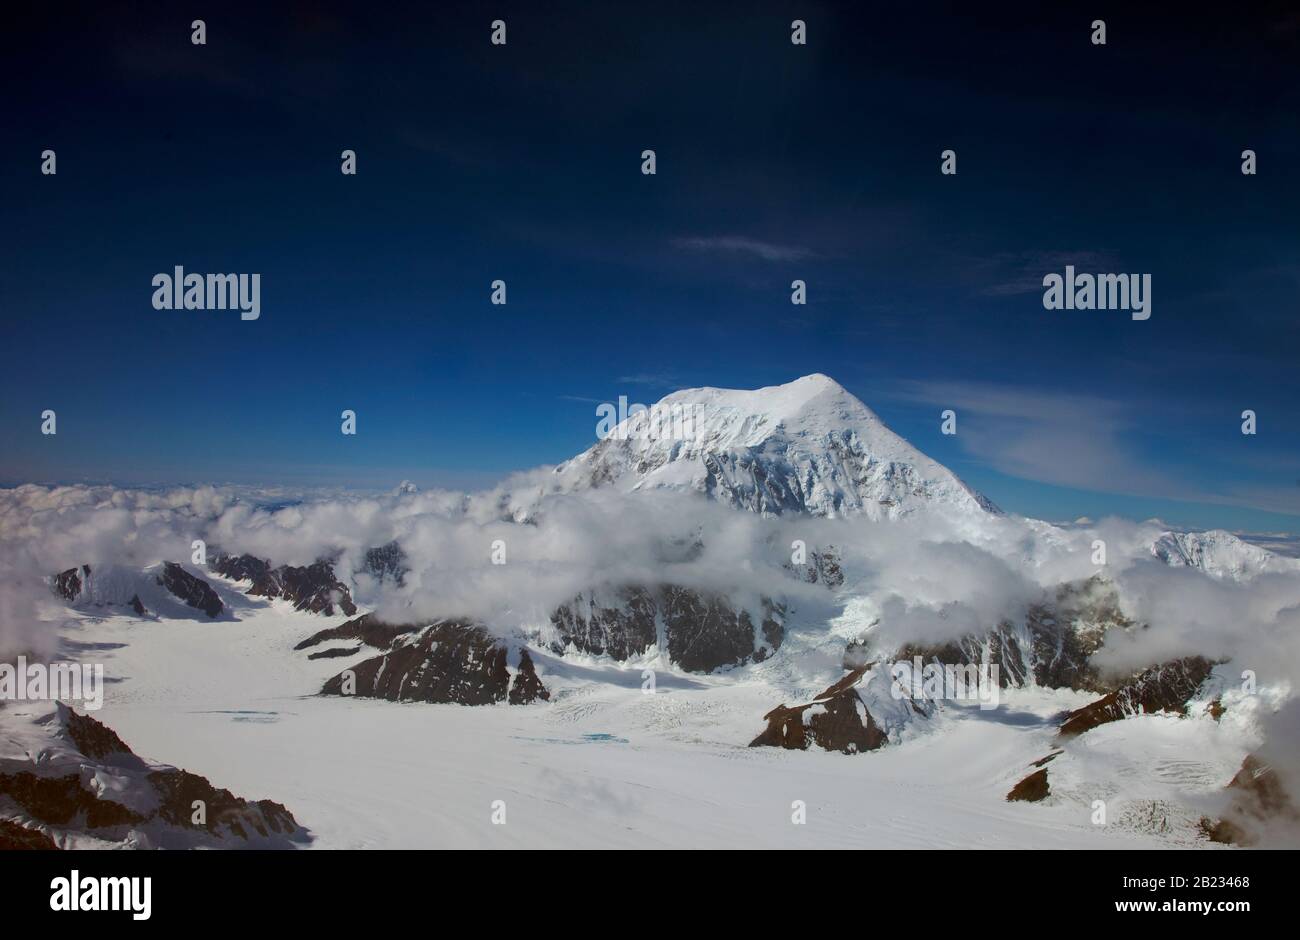 Denali NATIONAL PARK, USA - 06. August 2008 - Luftansicht des Mount McKinley oder Denali ("The Great One") in Alaska ist der höchste Berggipfel in North Am Stockfoto